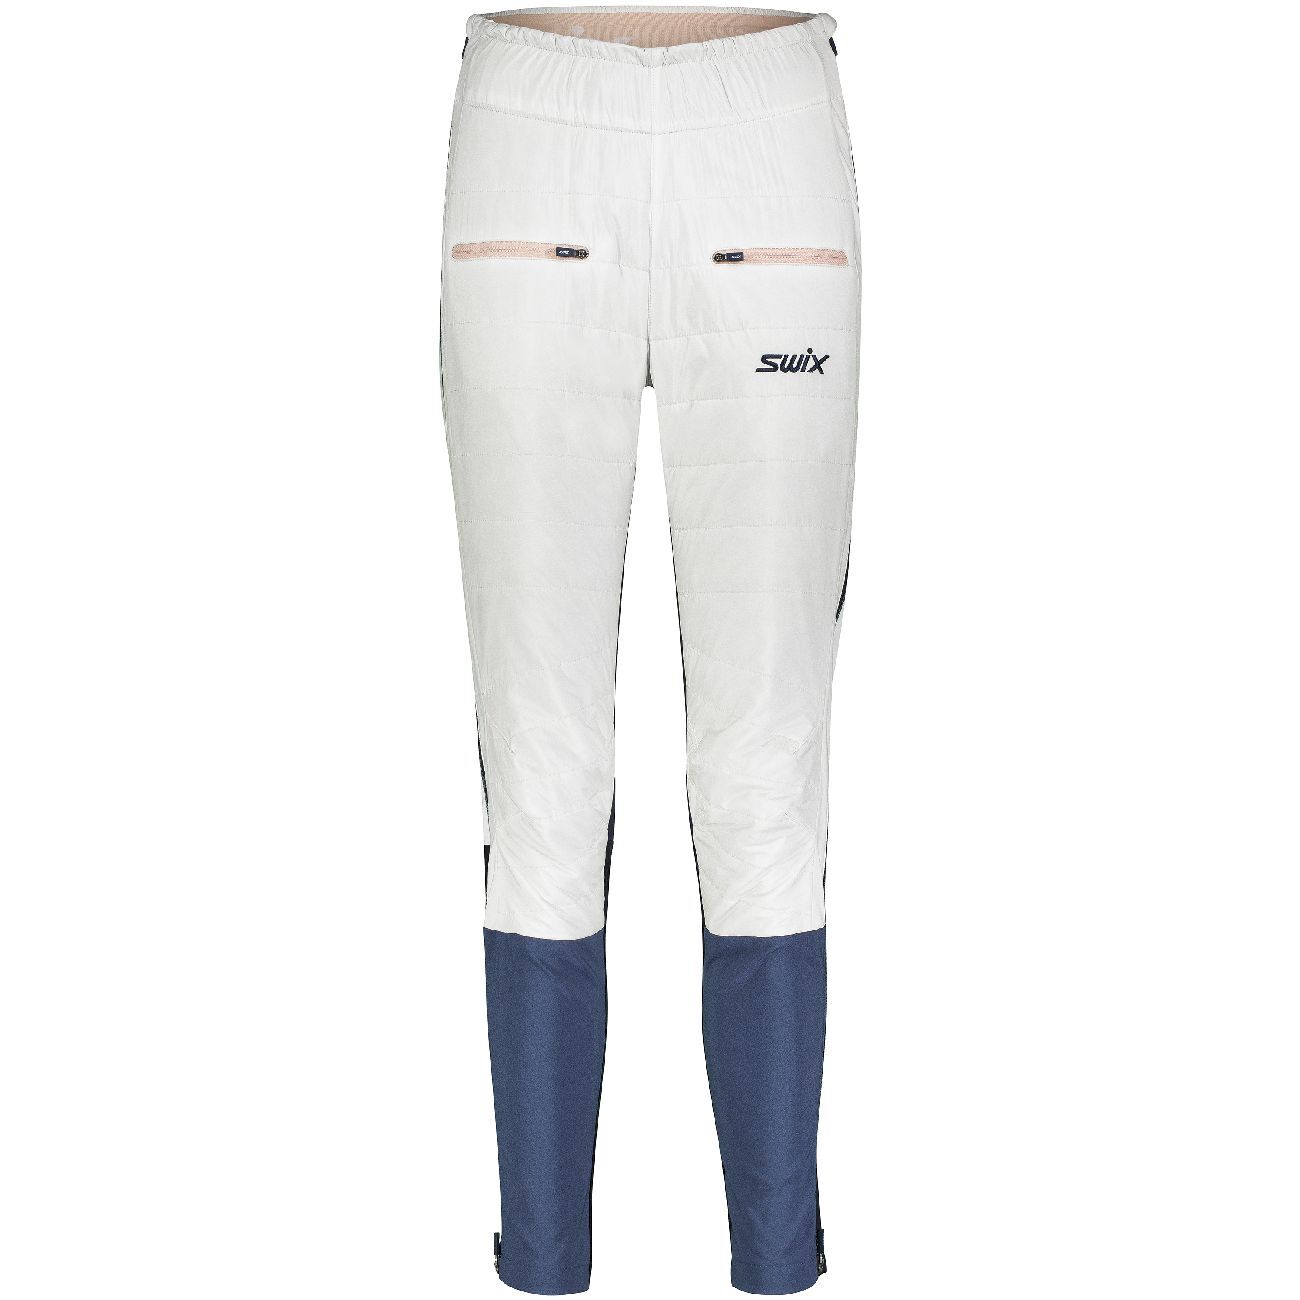 Swix Horizon Pant - Pantalon ski de fond femme